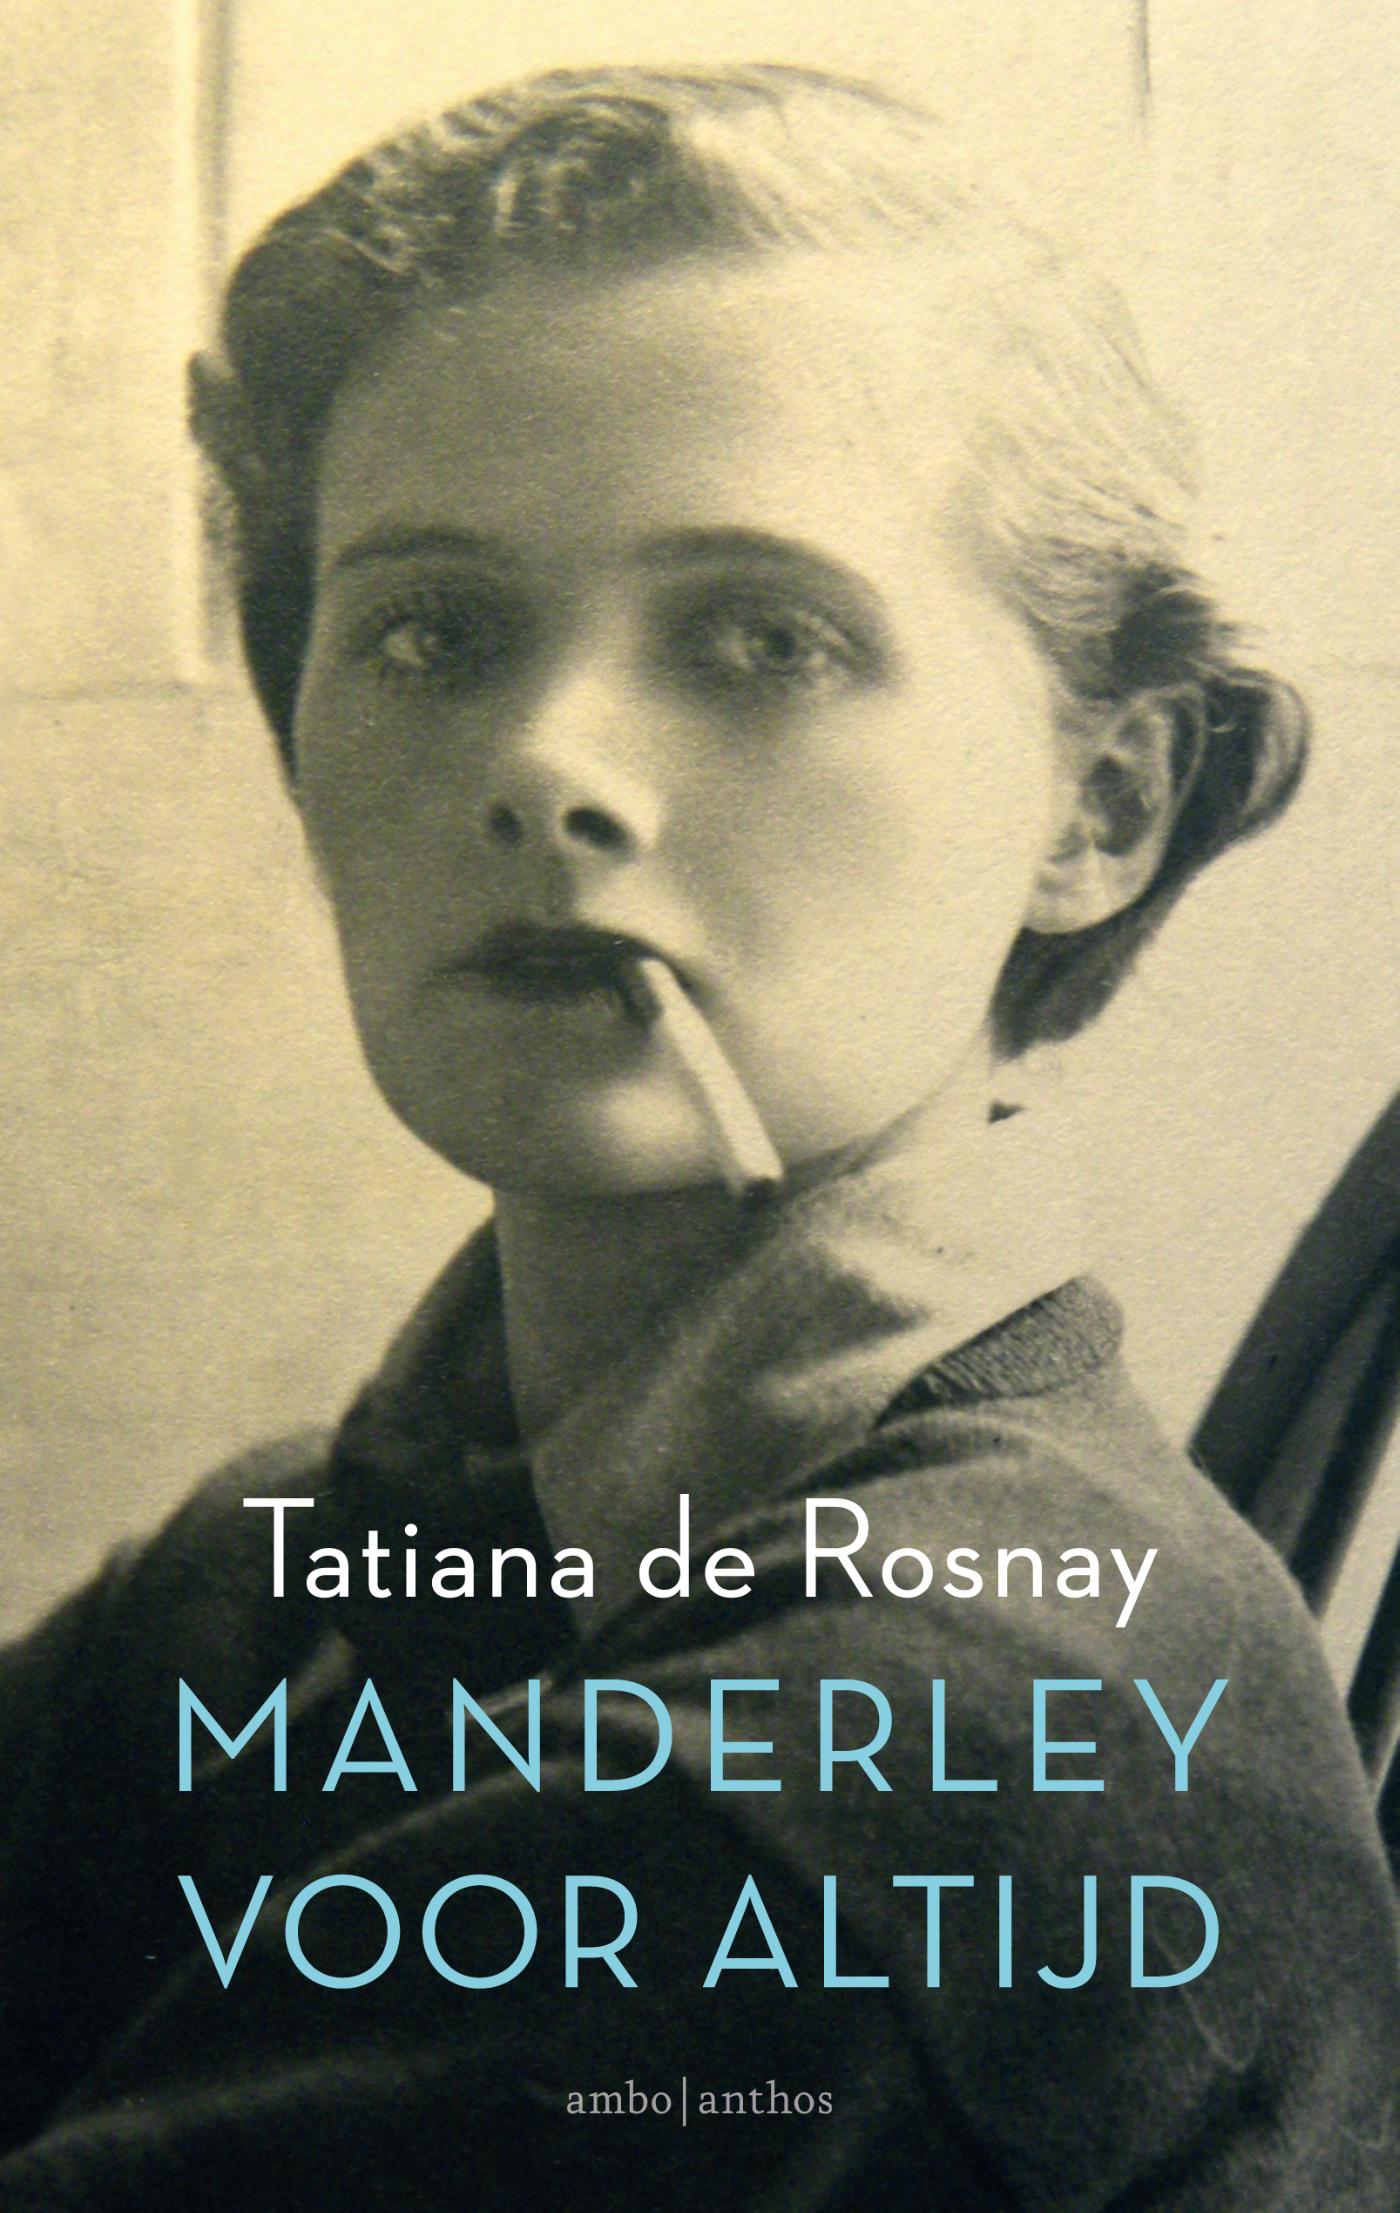 Manderley voor altijd (Ebook)